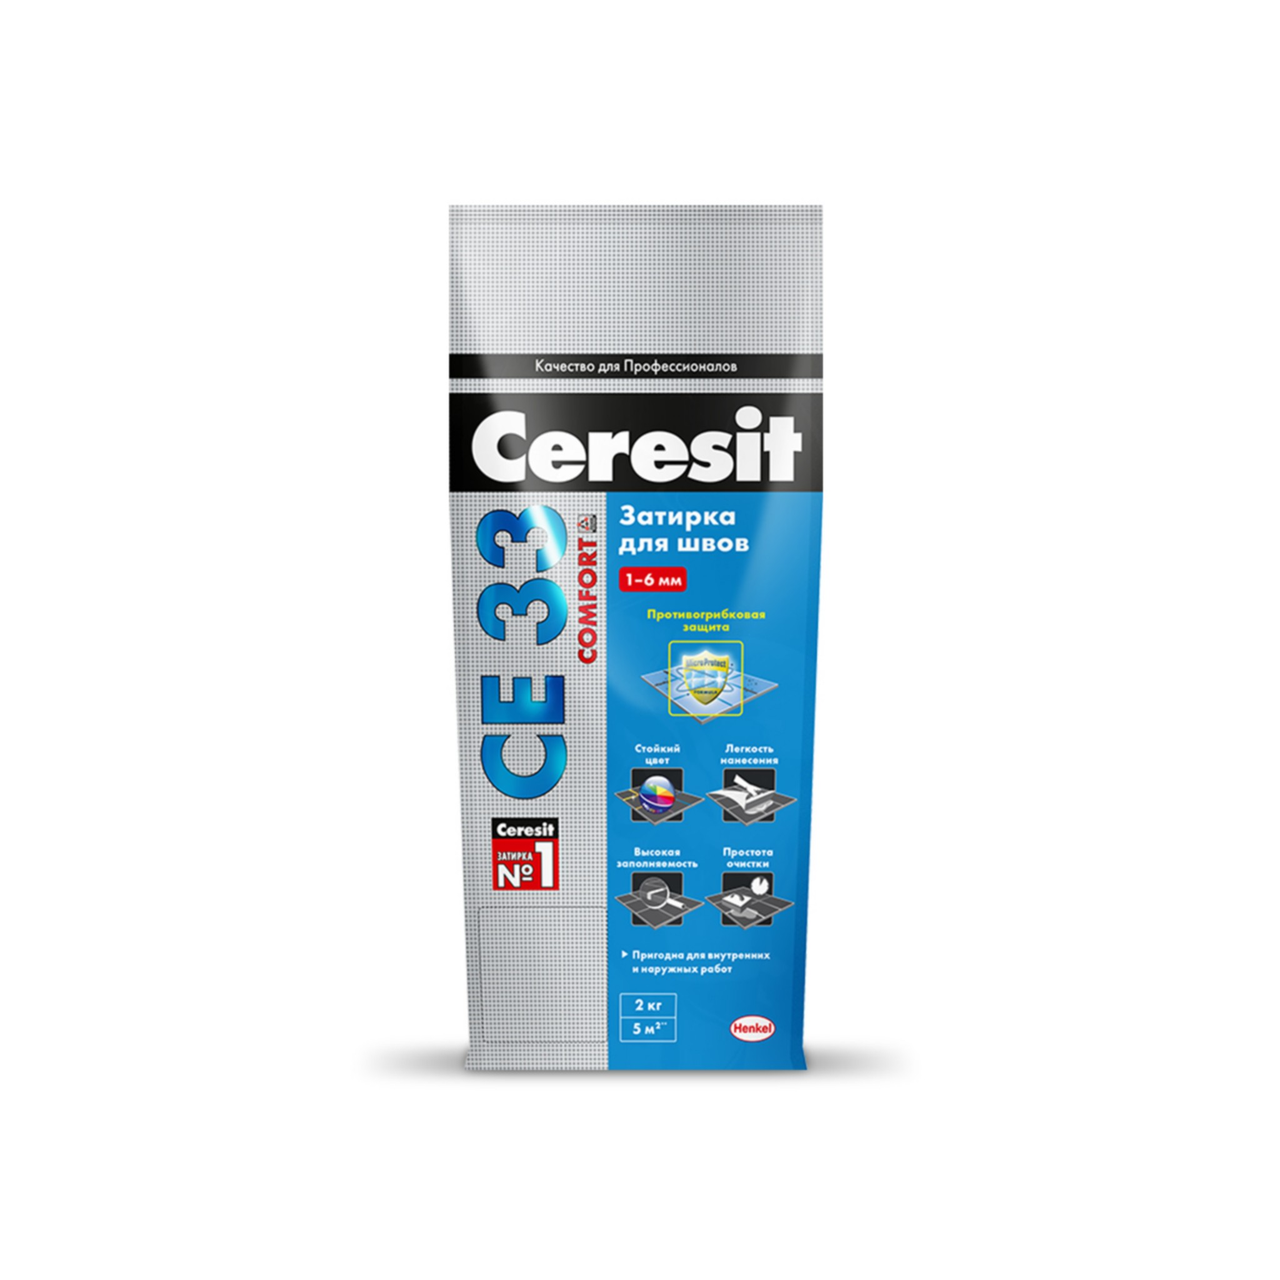 Ceresit  CE 33 Comfort затирка для узких швов, цвет: Карамель (Caramel), 2 кг